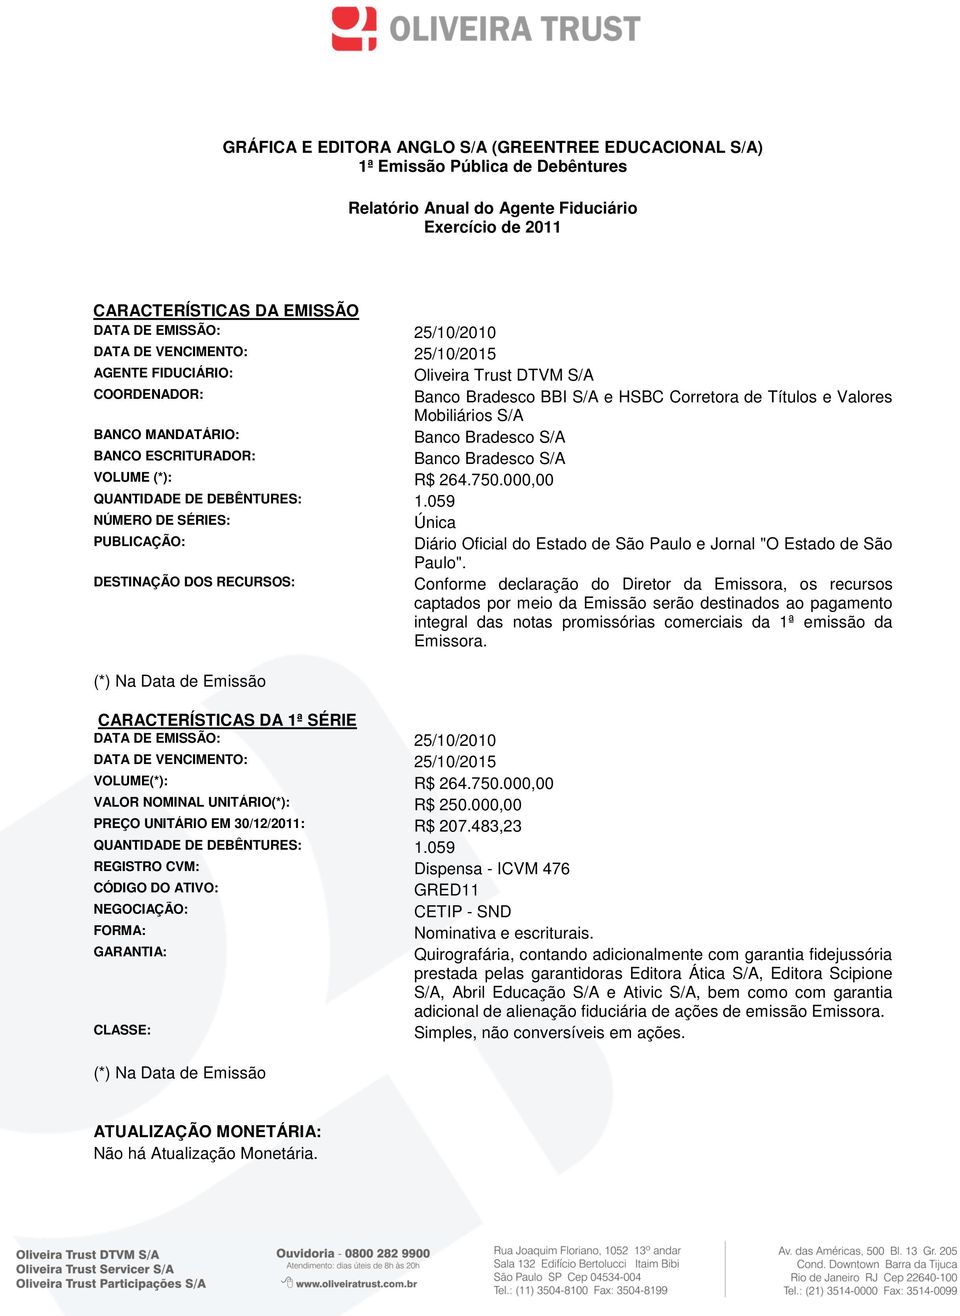 S/A BANCO ESCRITURADOR: Banco Bradesco S/A VOLUME (*): R$ 264.750.000,00 QUANTIDADE DE DEBÊNTURES: 1.